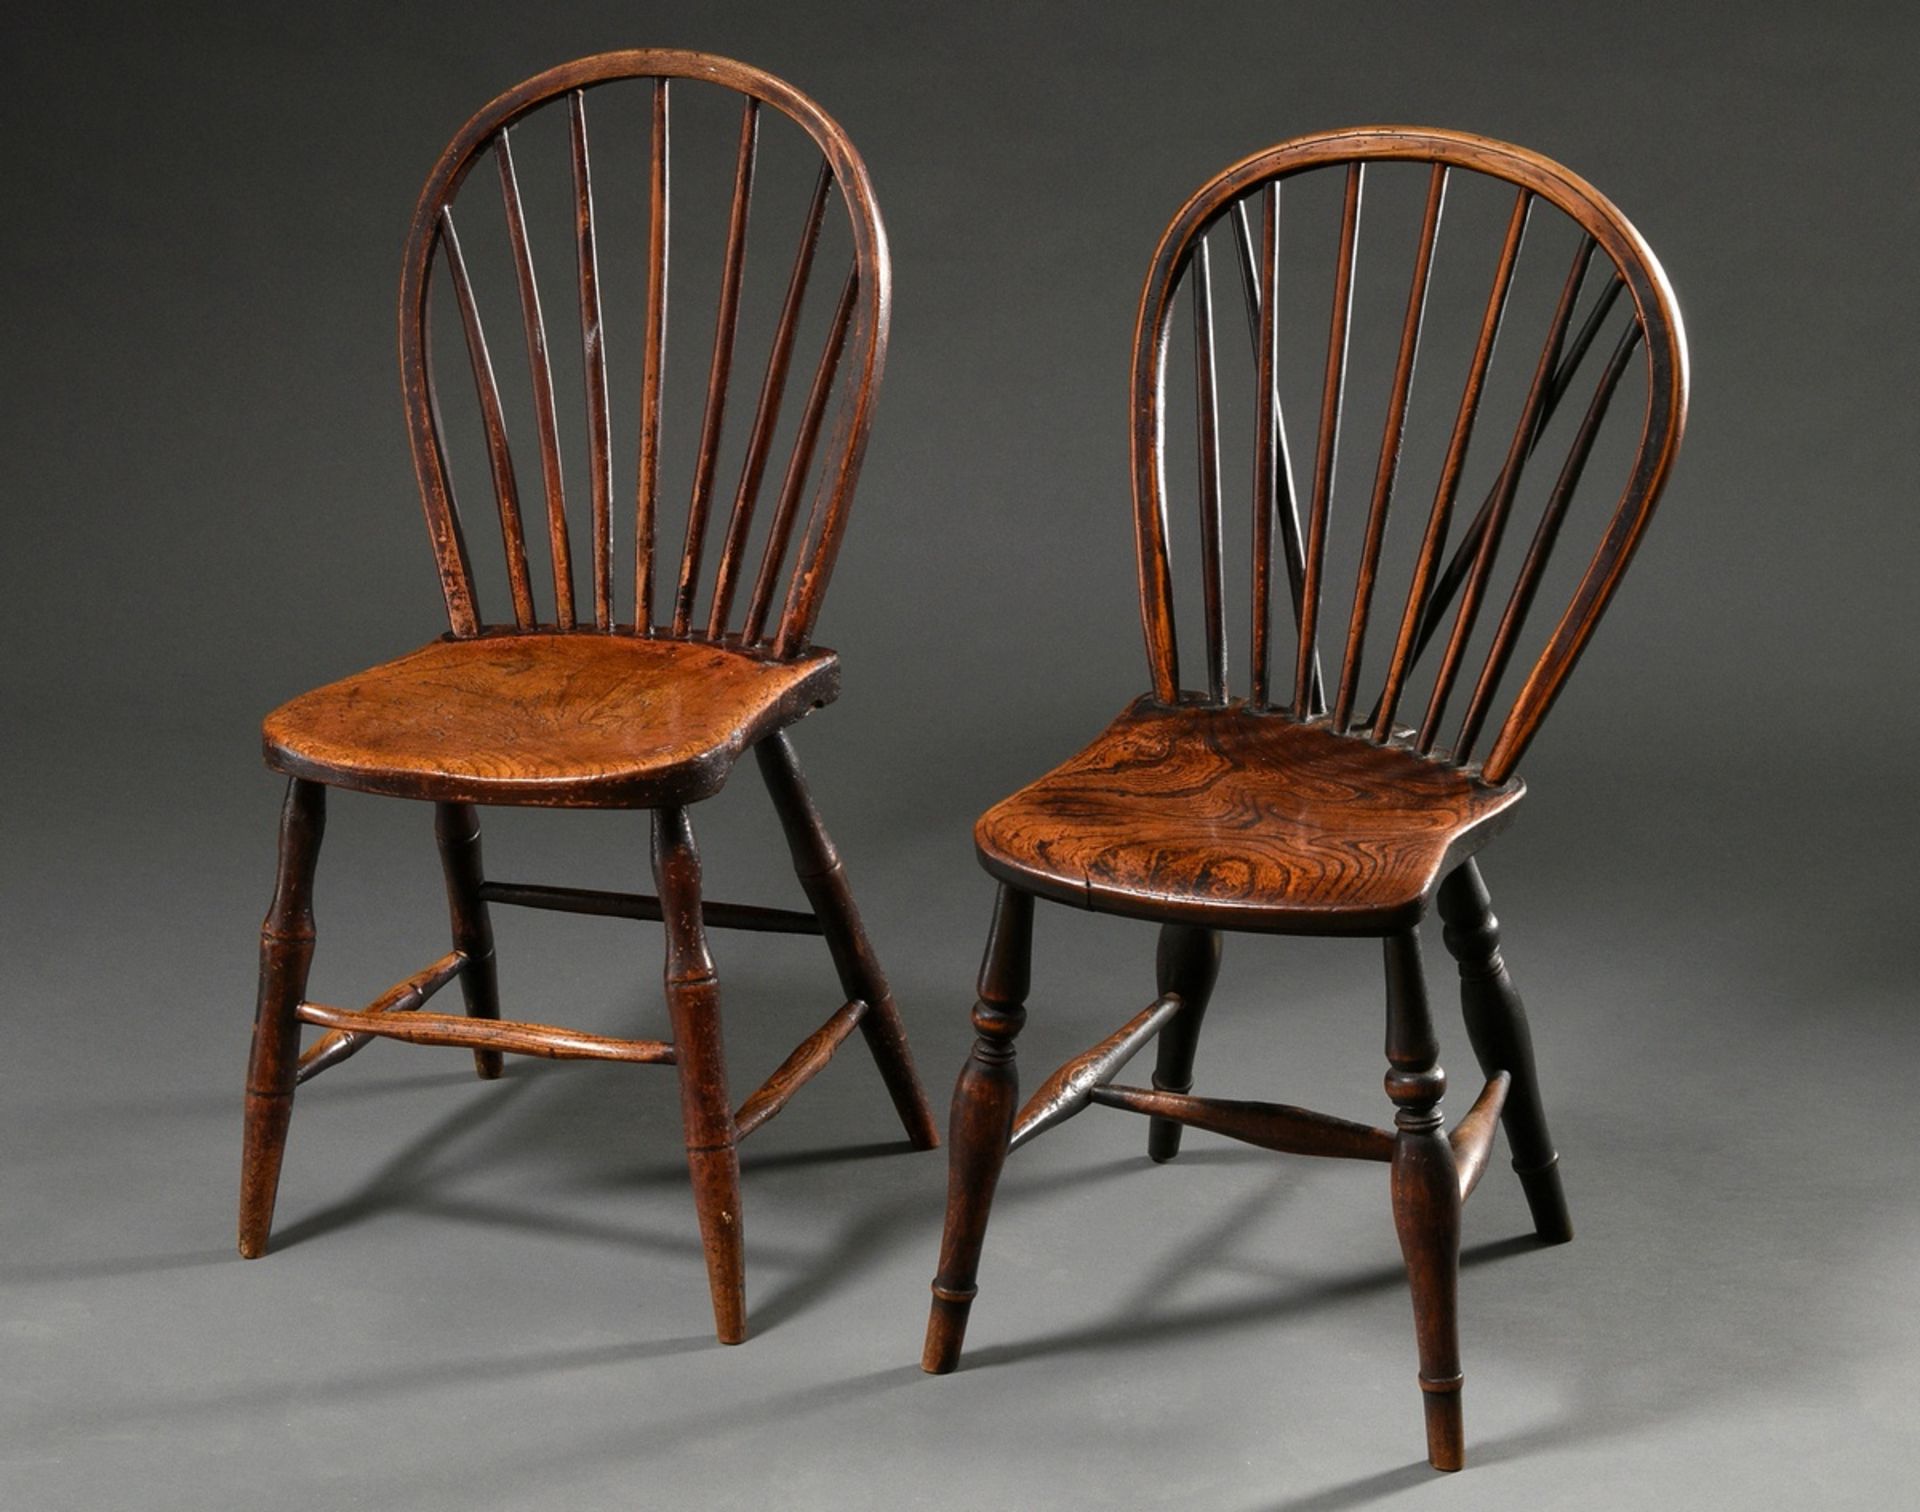 2 Diverse englische Windsor Stühle mit Spindle-Back, Eiche und Esche, 19.Jh., schöne Patina, H. 43/